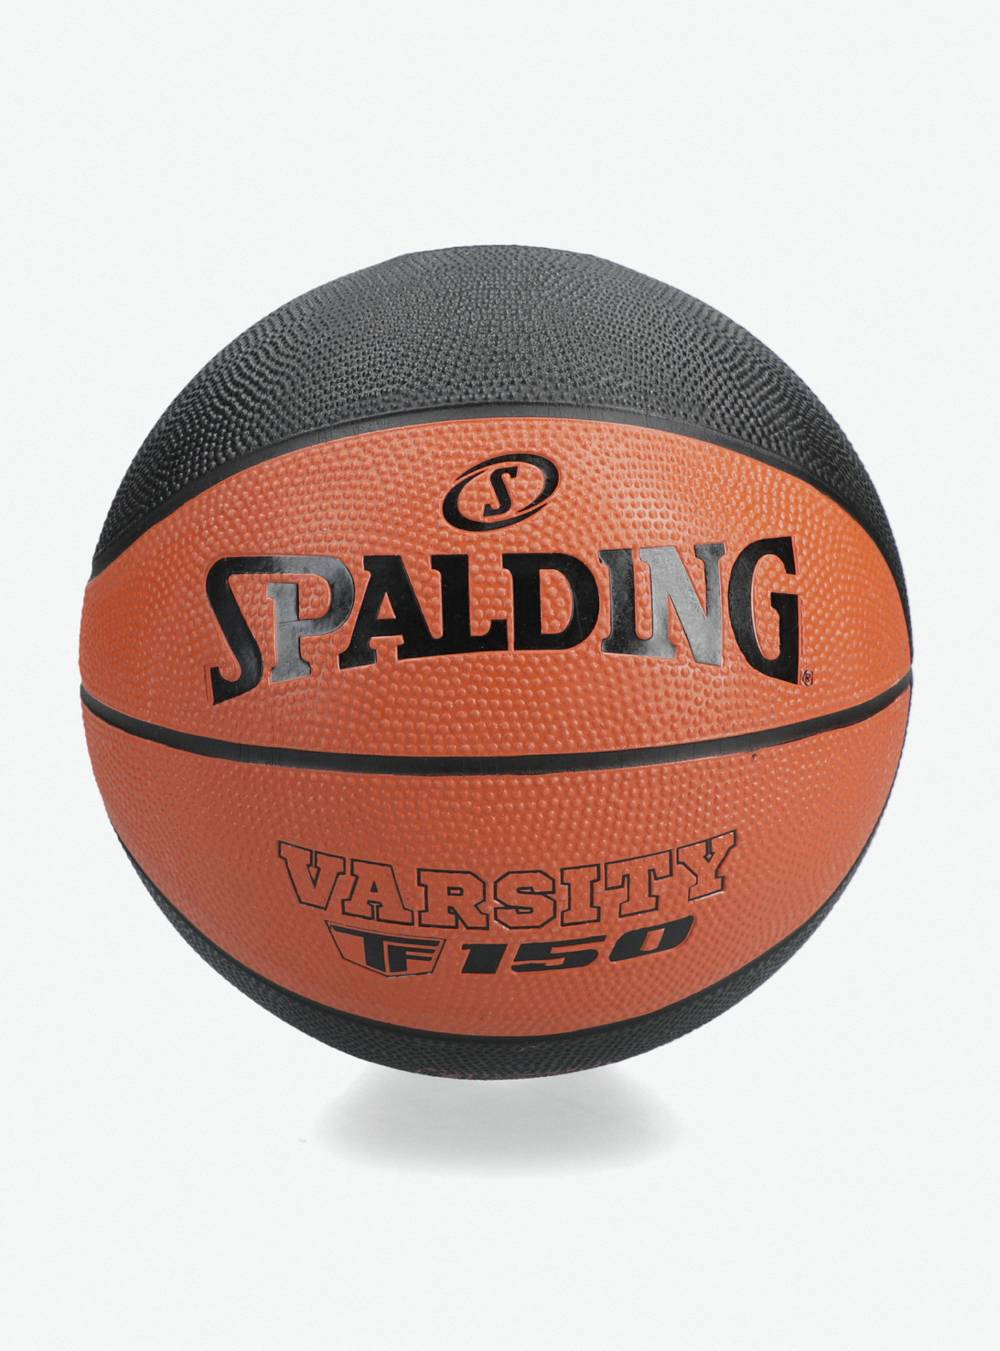 Spalding balón de básquetbol  varsity  tf150 goma premiun naranjo 'n 5